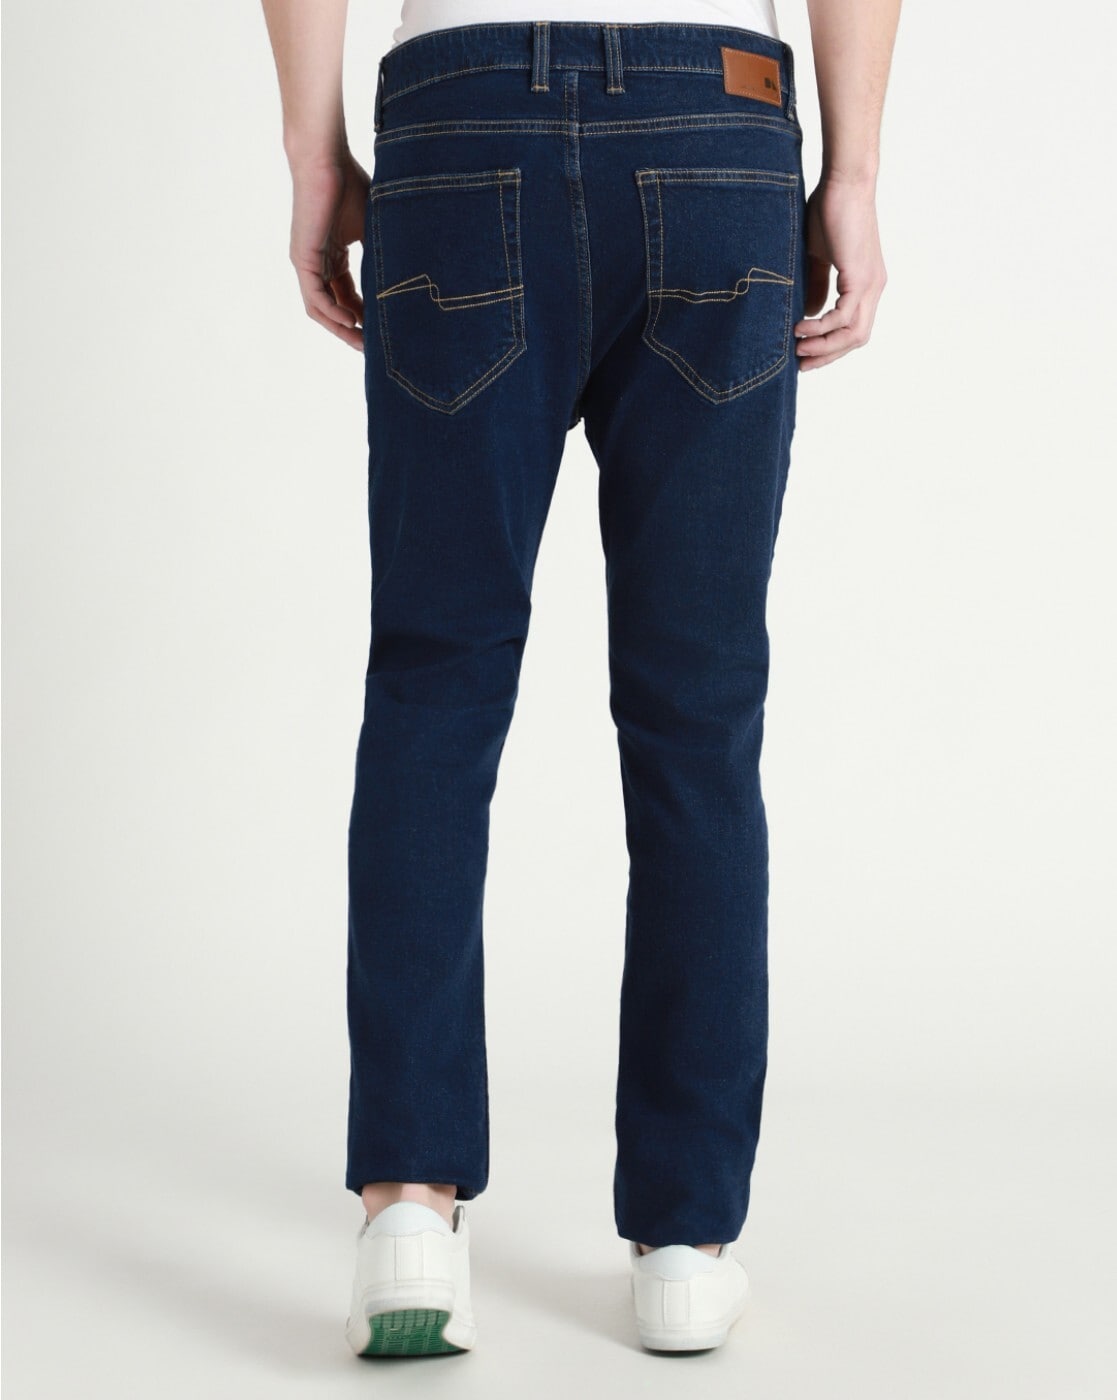 Buy Blue Jeans for Men by DENNISLINGO PREMIUM ATTIRE Online